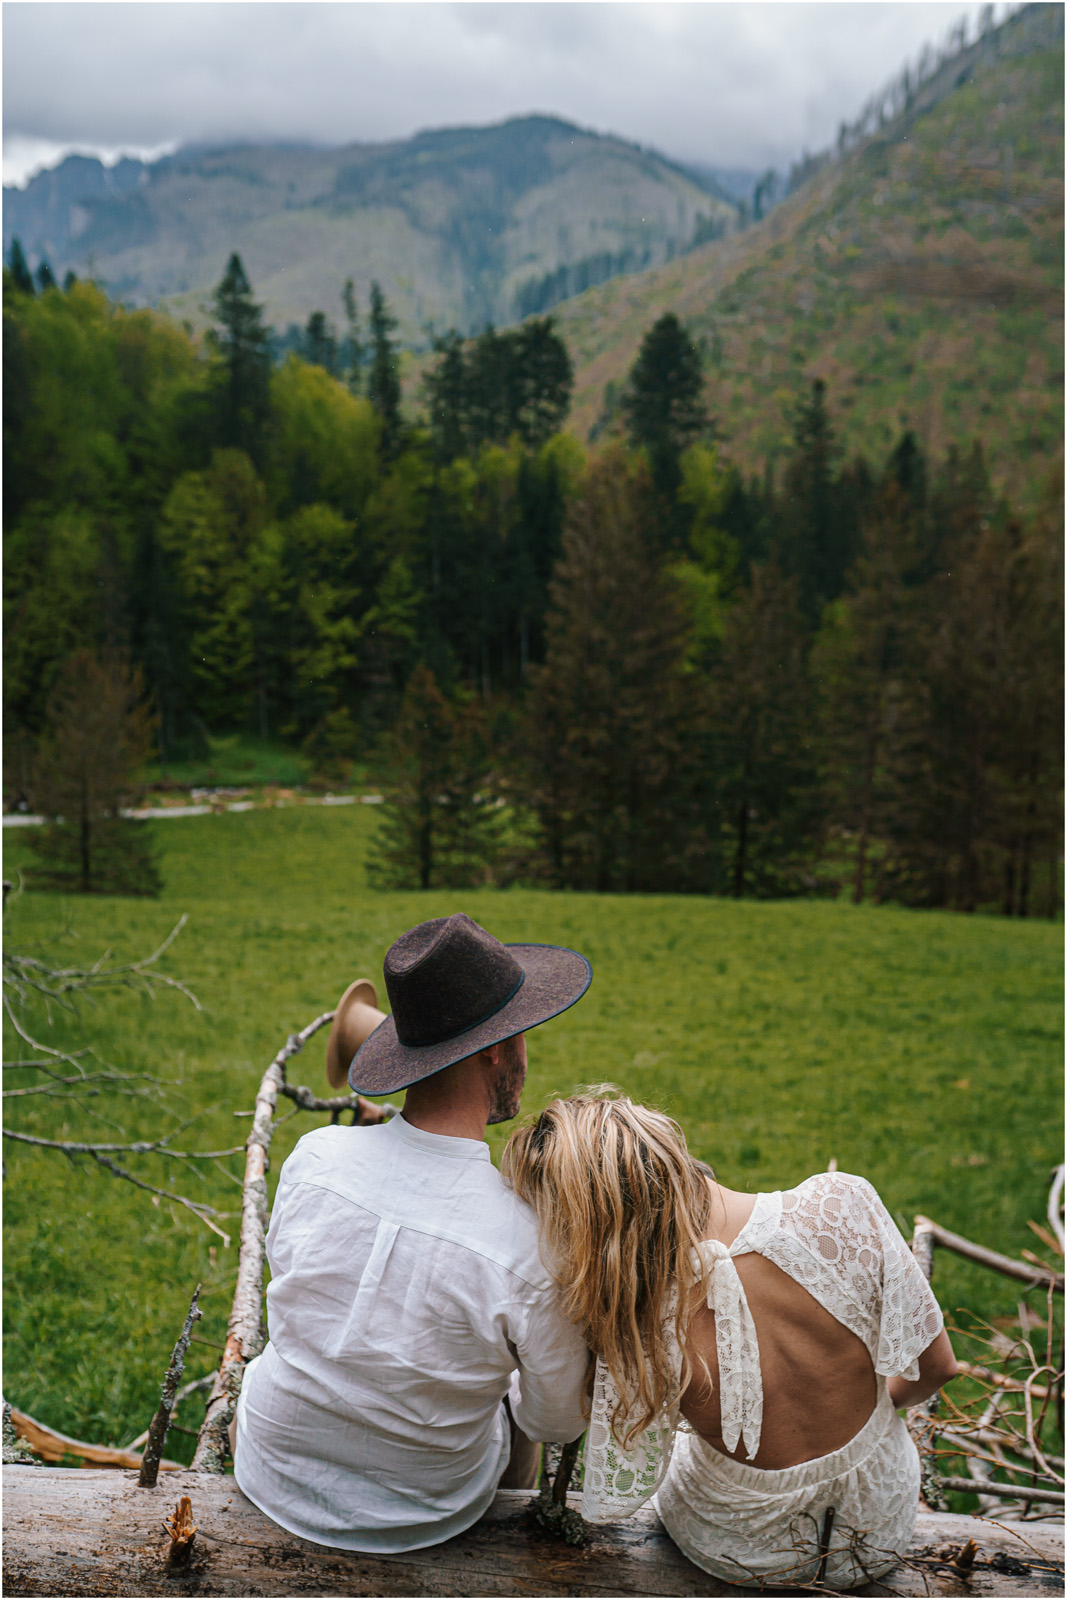 Amanda & Błażej | ślub i sesja w górach 82